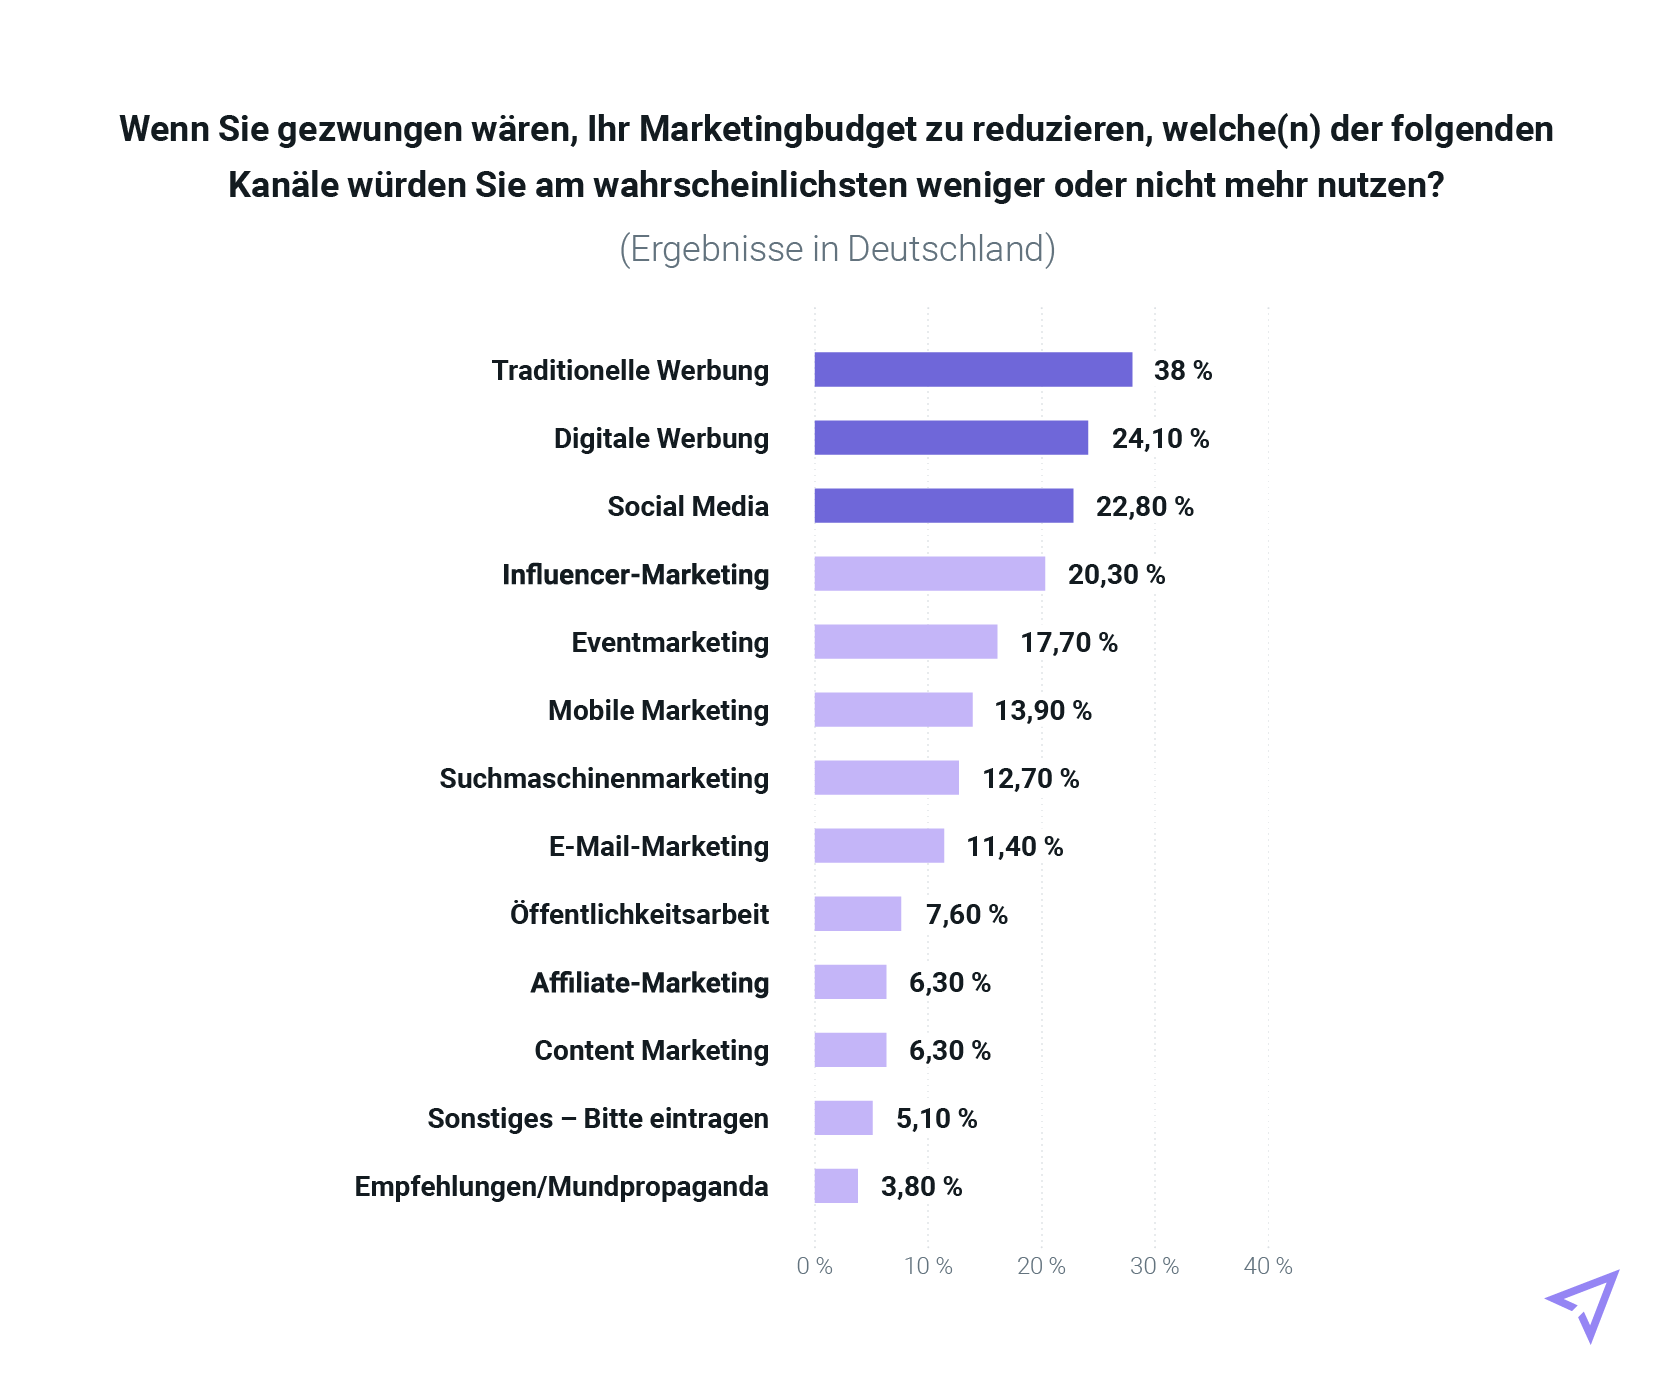 Tabelle der möglichen Kürzungen der Marketingkanäle (Ergebnisse aus Deutschland)